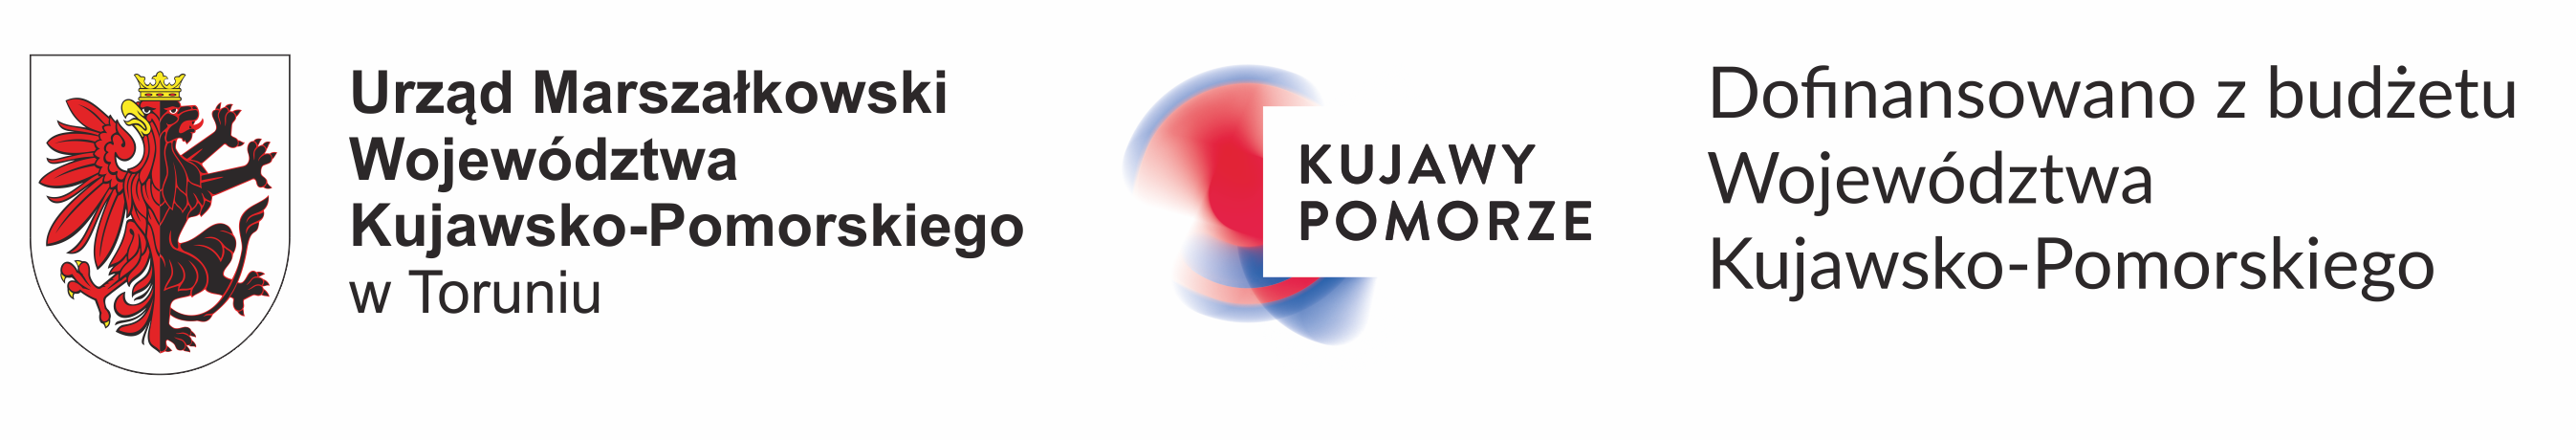 logo-urzad-marszalkowski.png